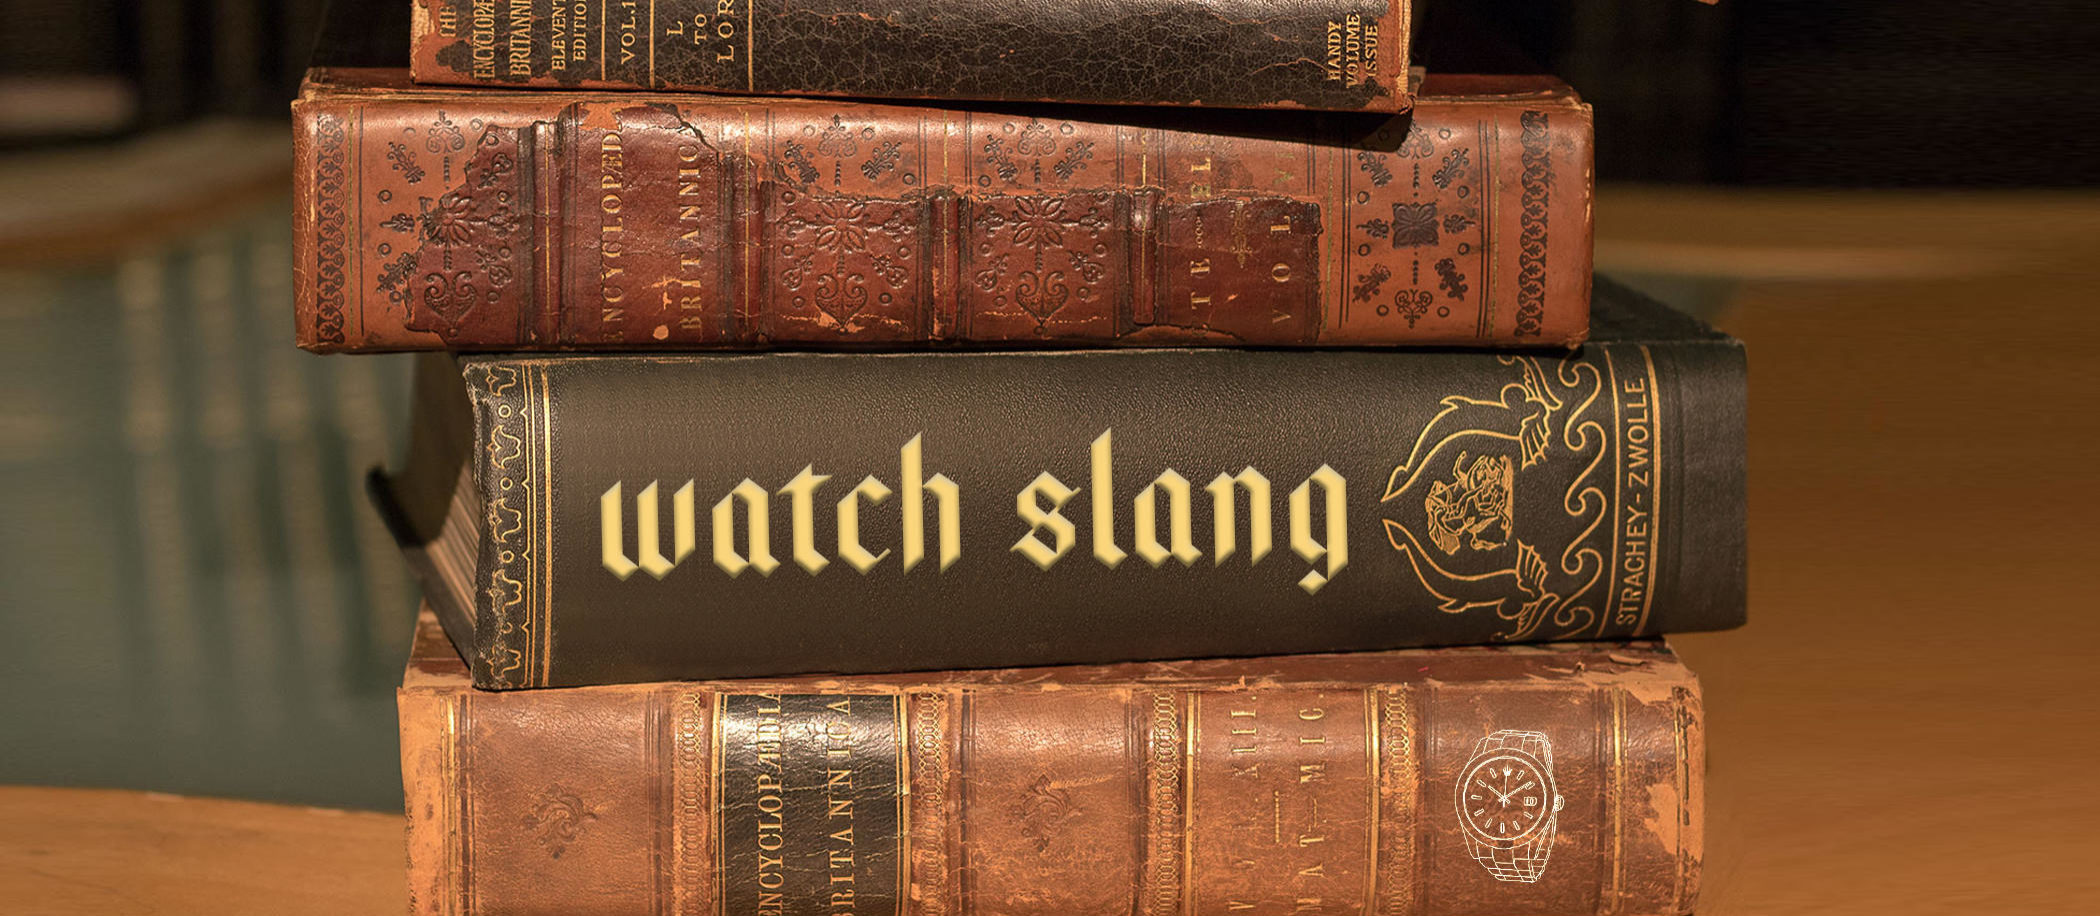 Watch slang